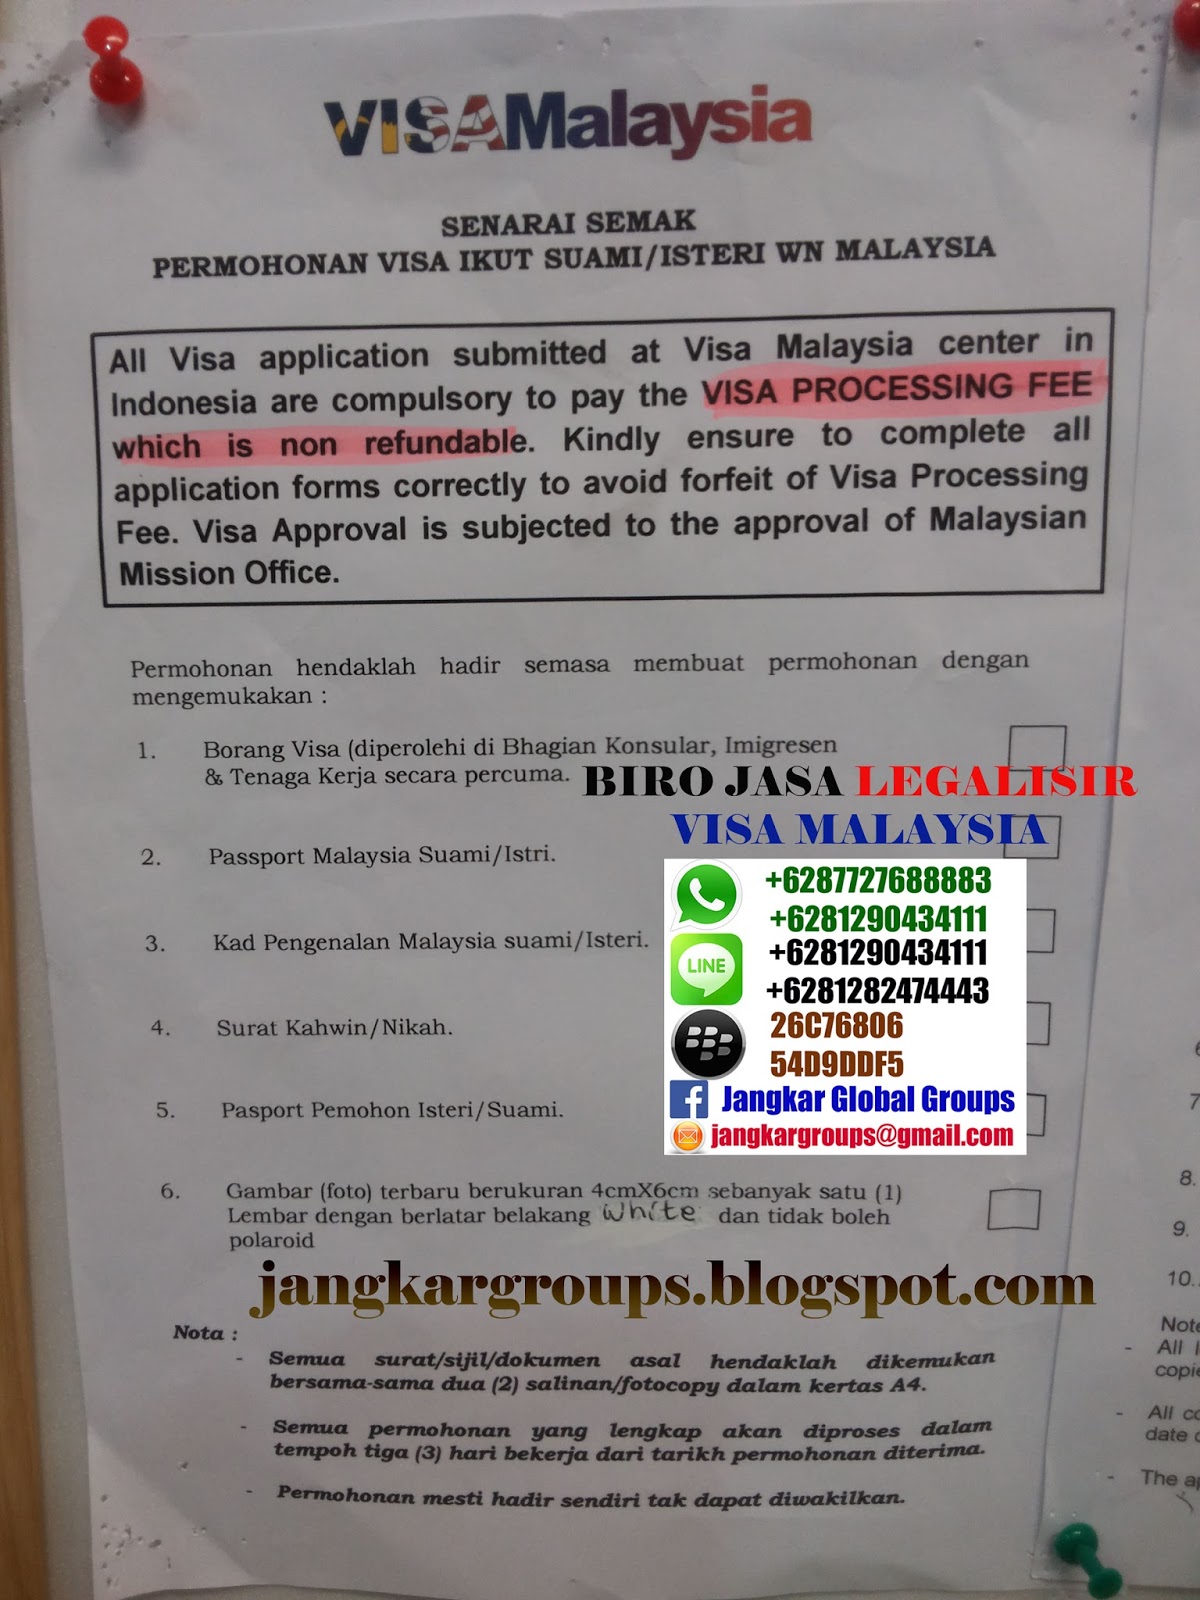 VISA MALAYSIA IKUT SUAMI ATAU ISTRI - Jangkar Groups